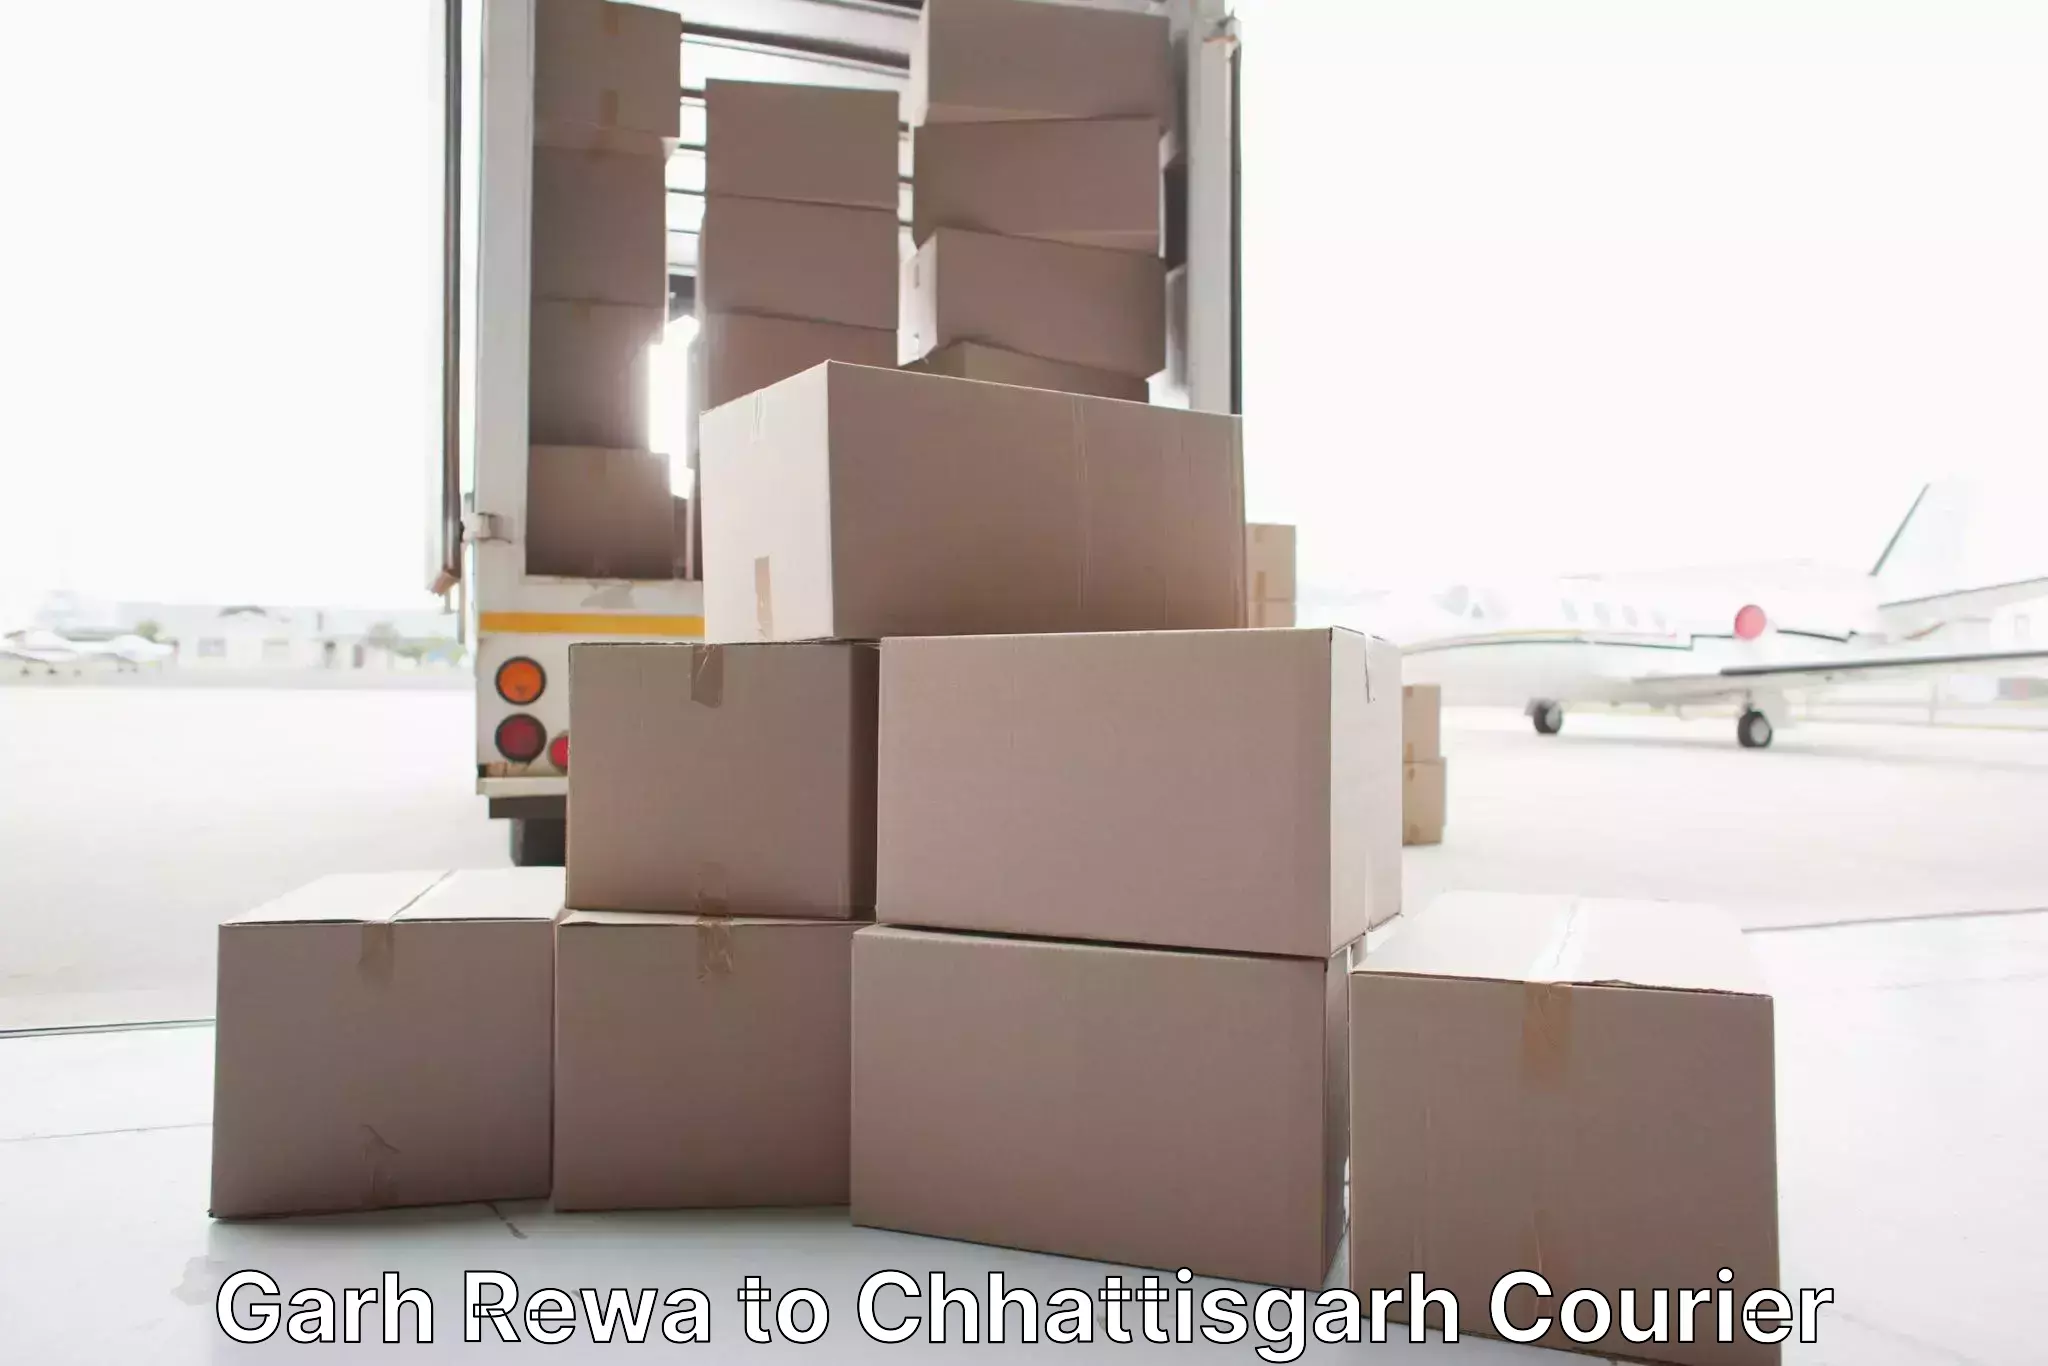 Comprehensive household relocation in Garh Rewa to Chhattisgarh